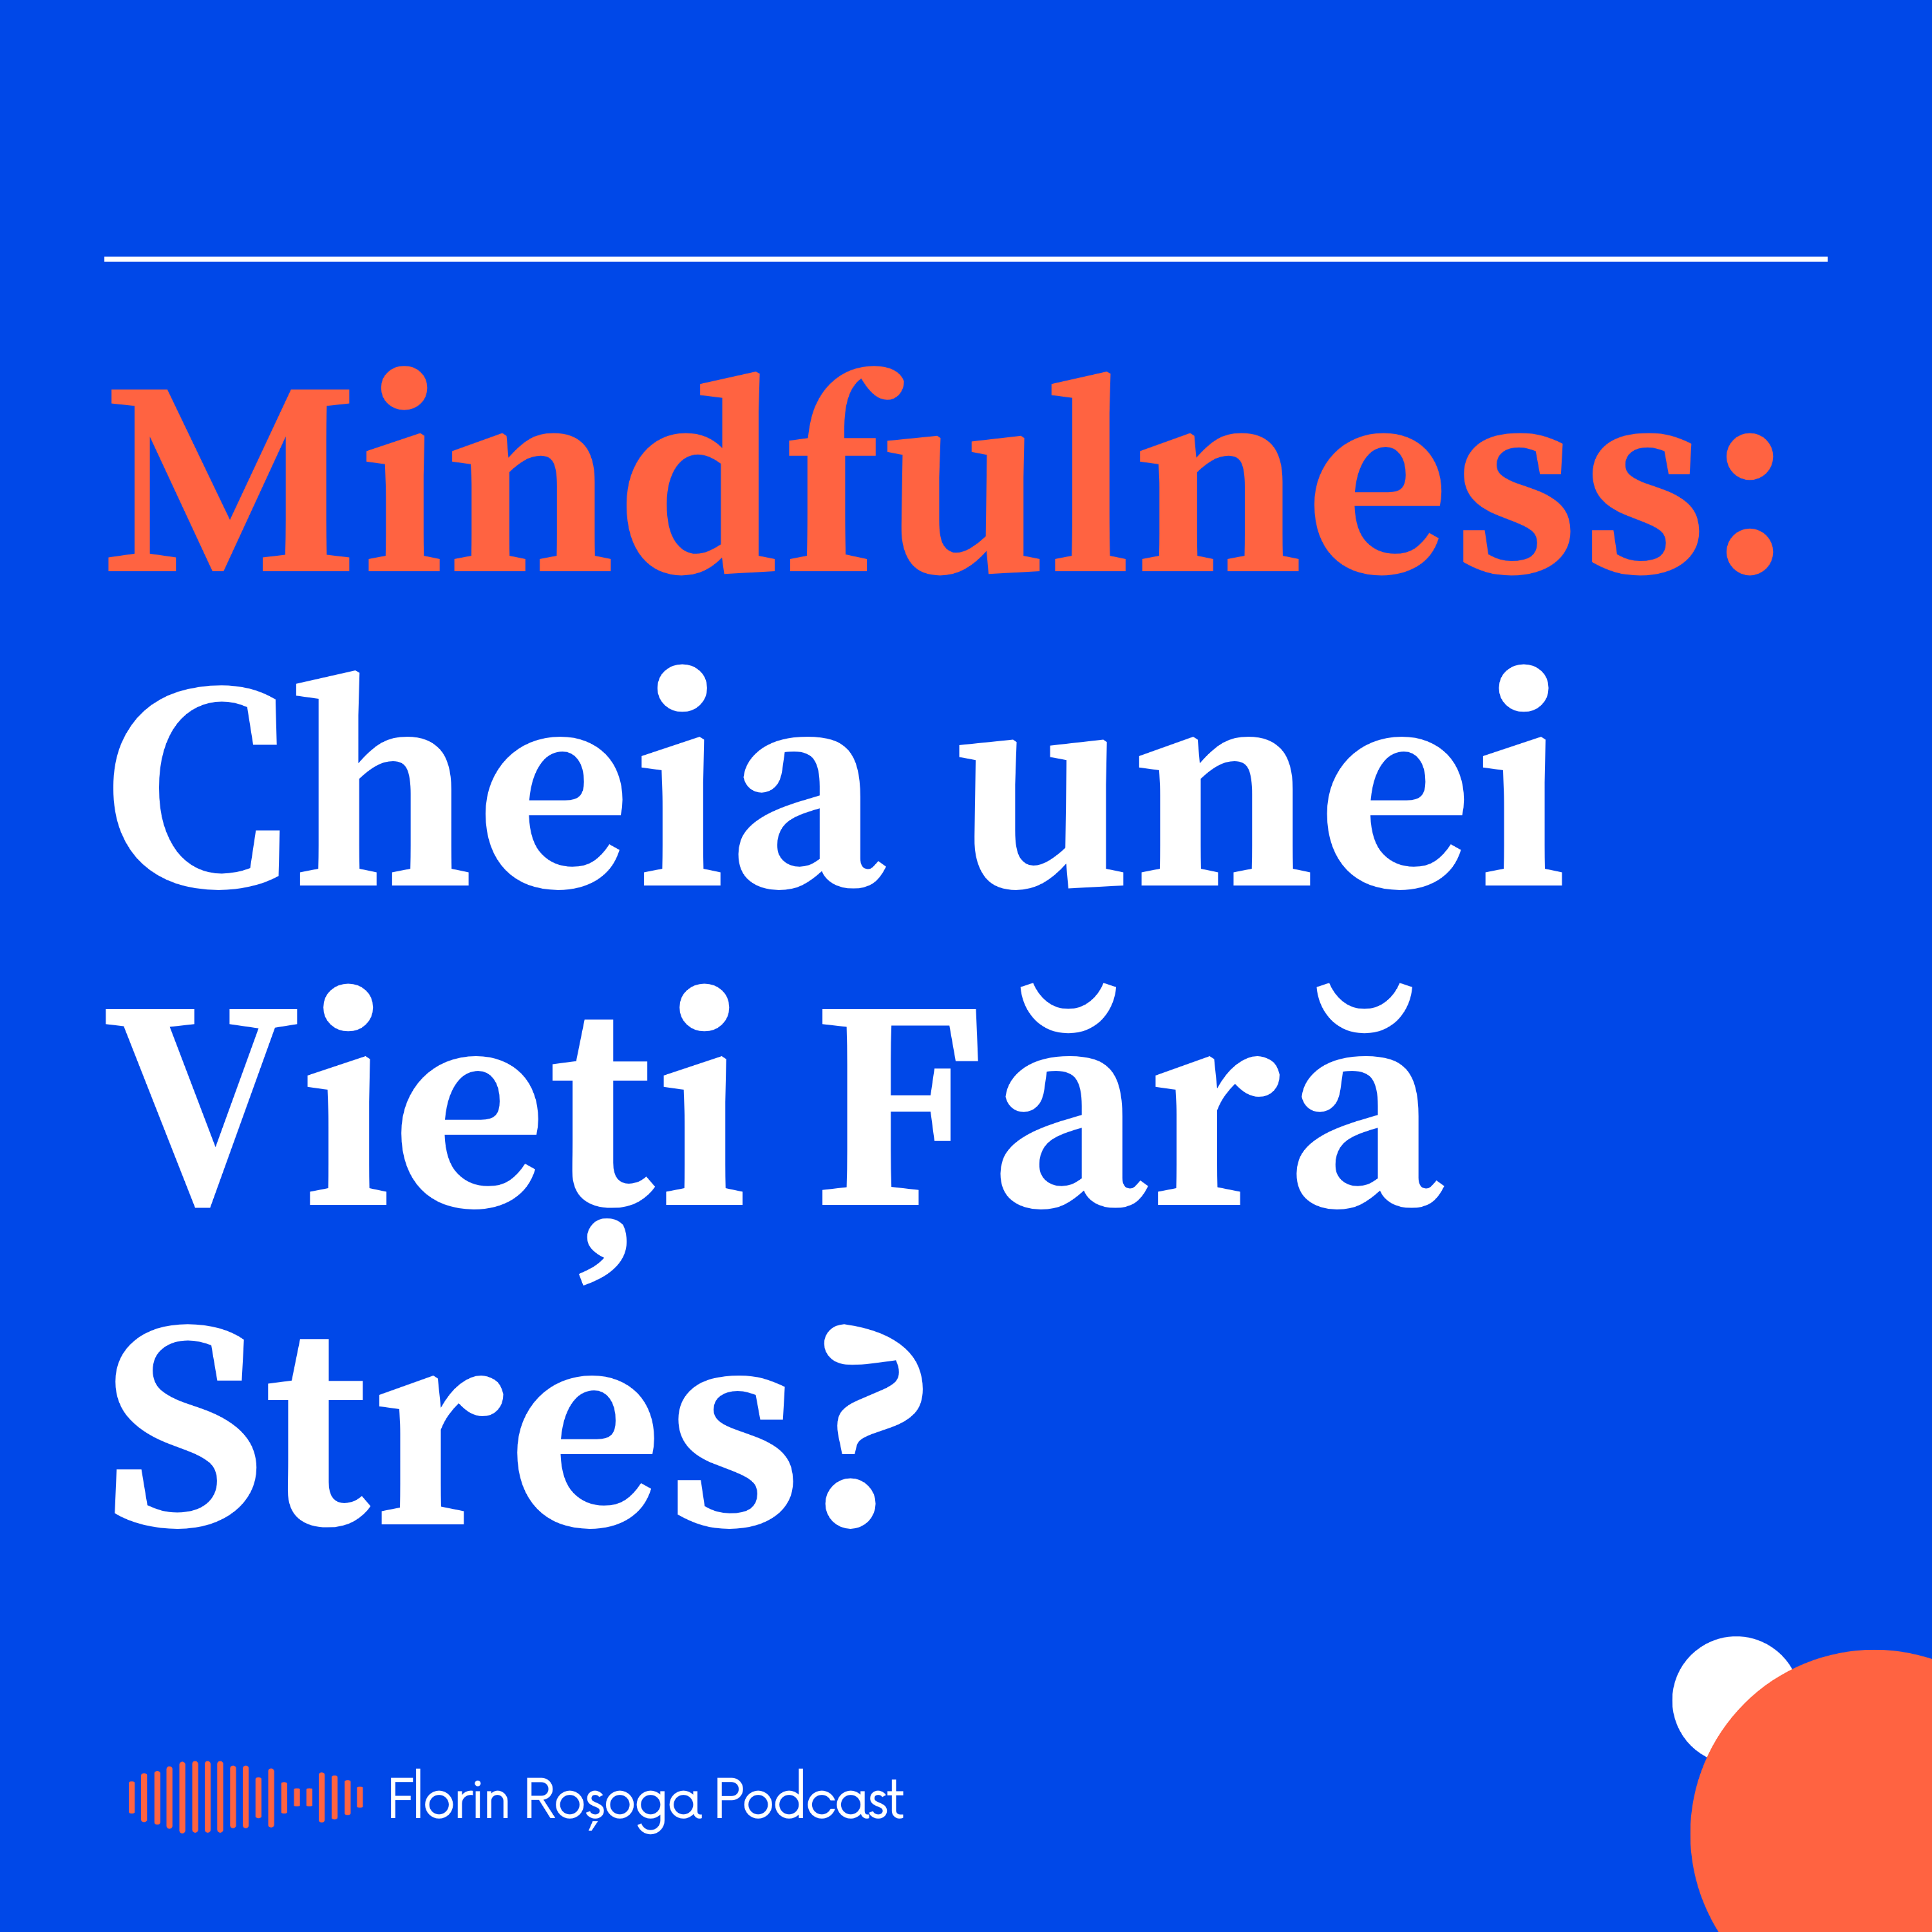 Este Mindfulness Cheia unei Vieți Fără Stres?